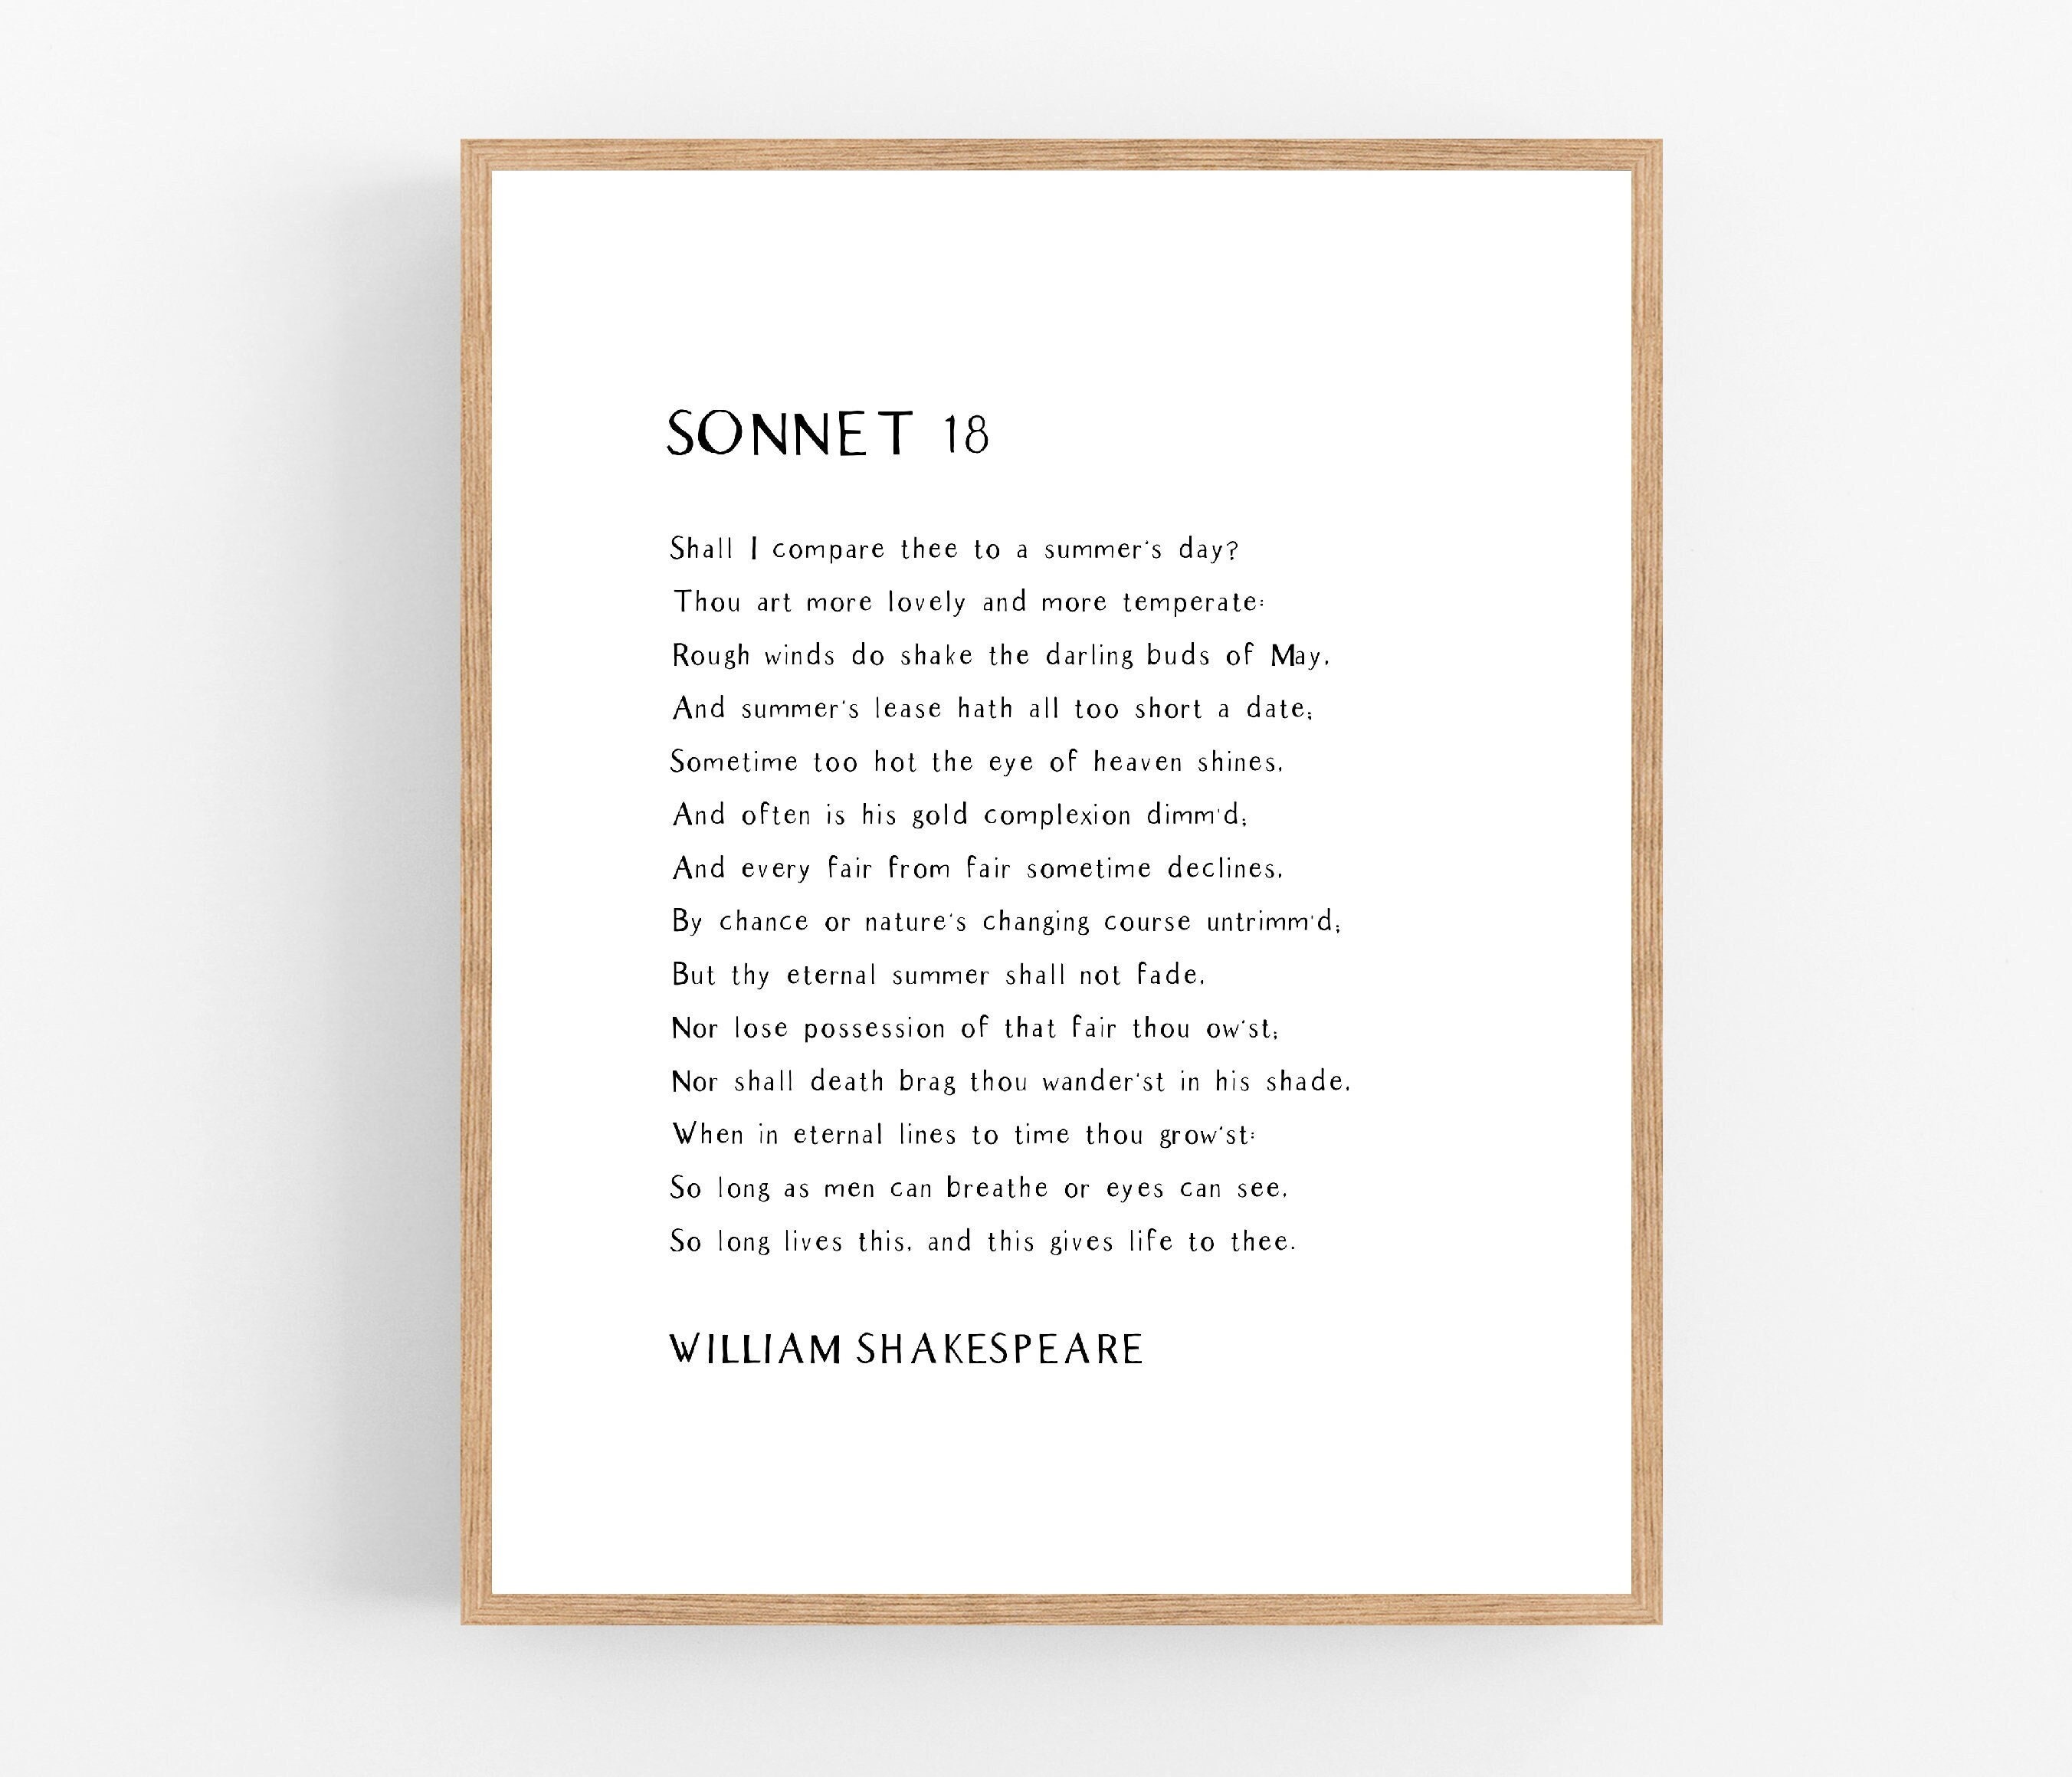 Soneto 18, william shakespeare